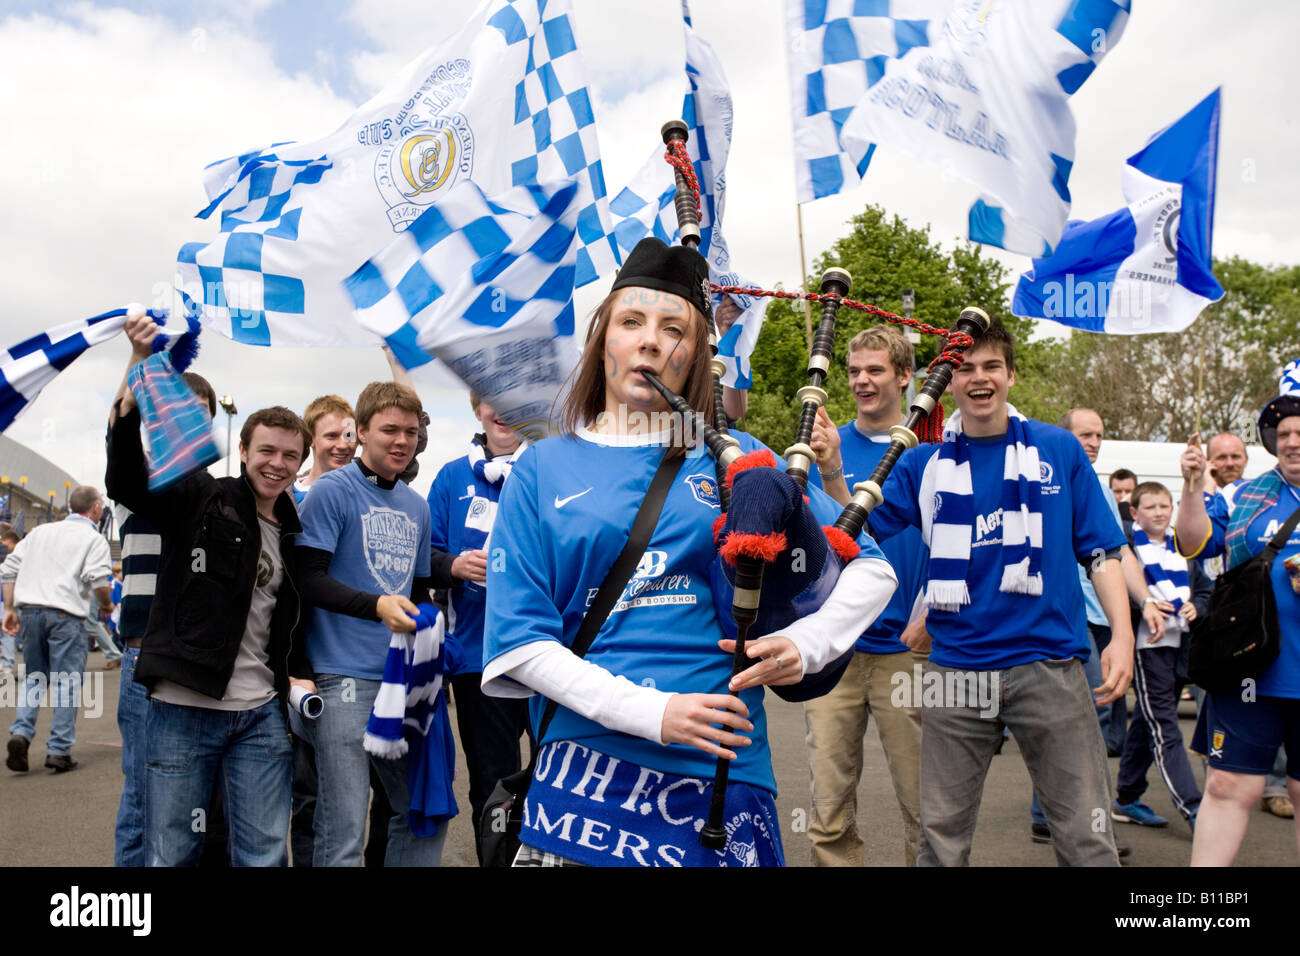 Schottische Piper weiblicher Fußballfan Dudelsack, erregten Menge Fans beim Scottish Cup Finale Fußballspiel Stockfoto